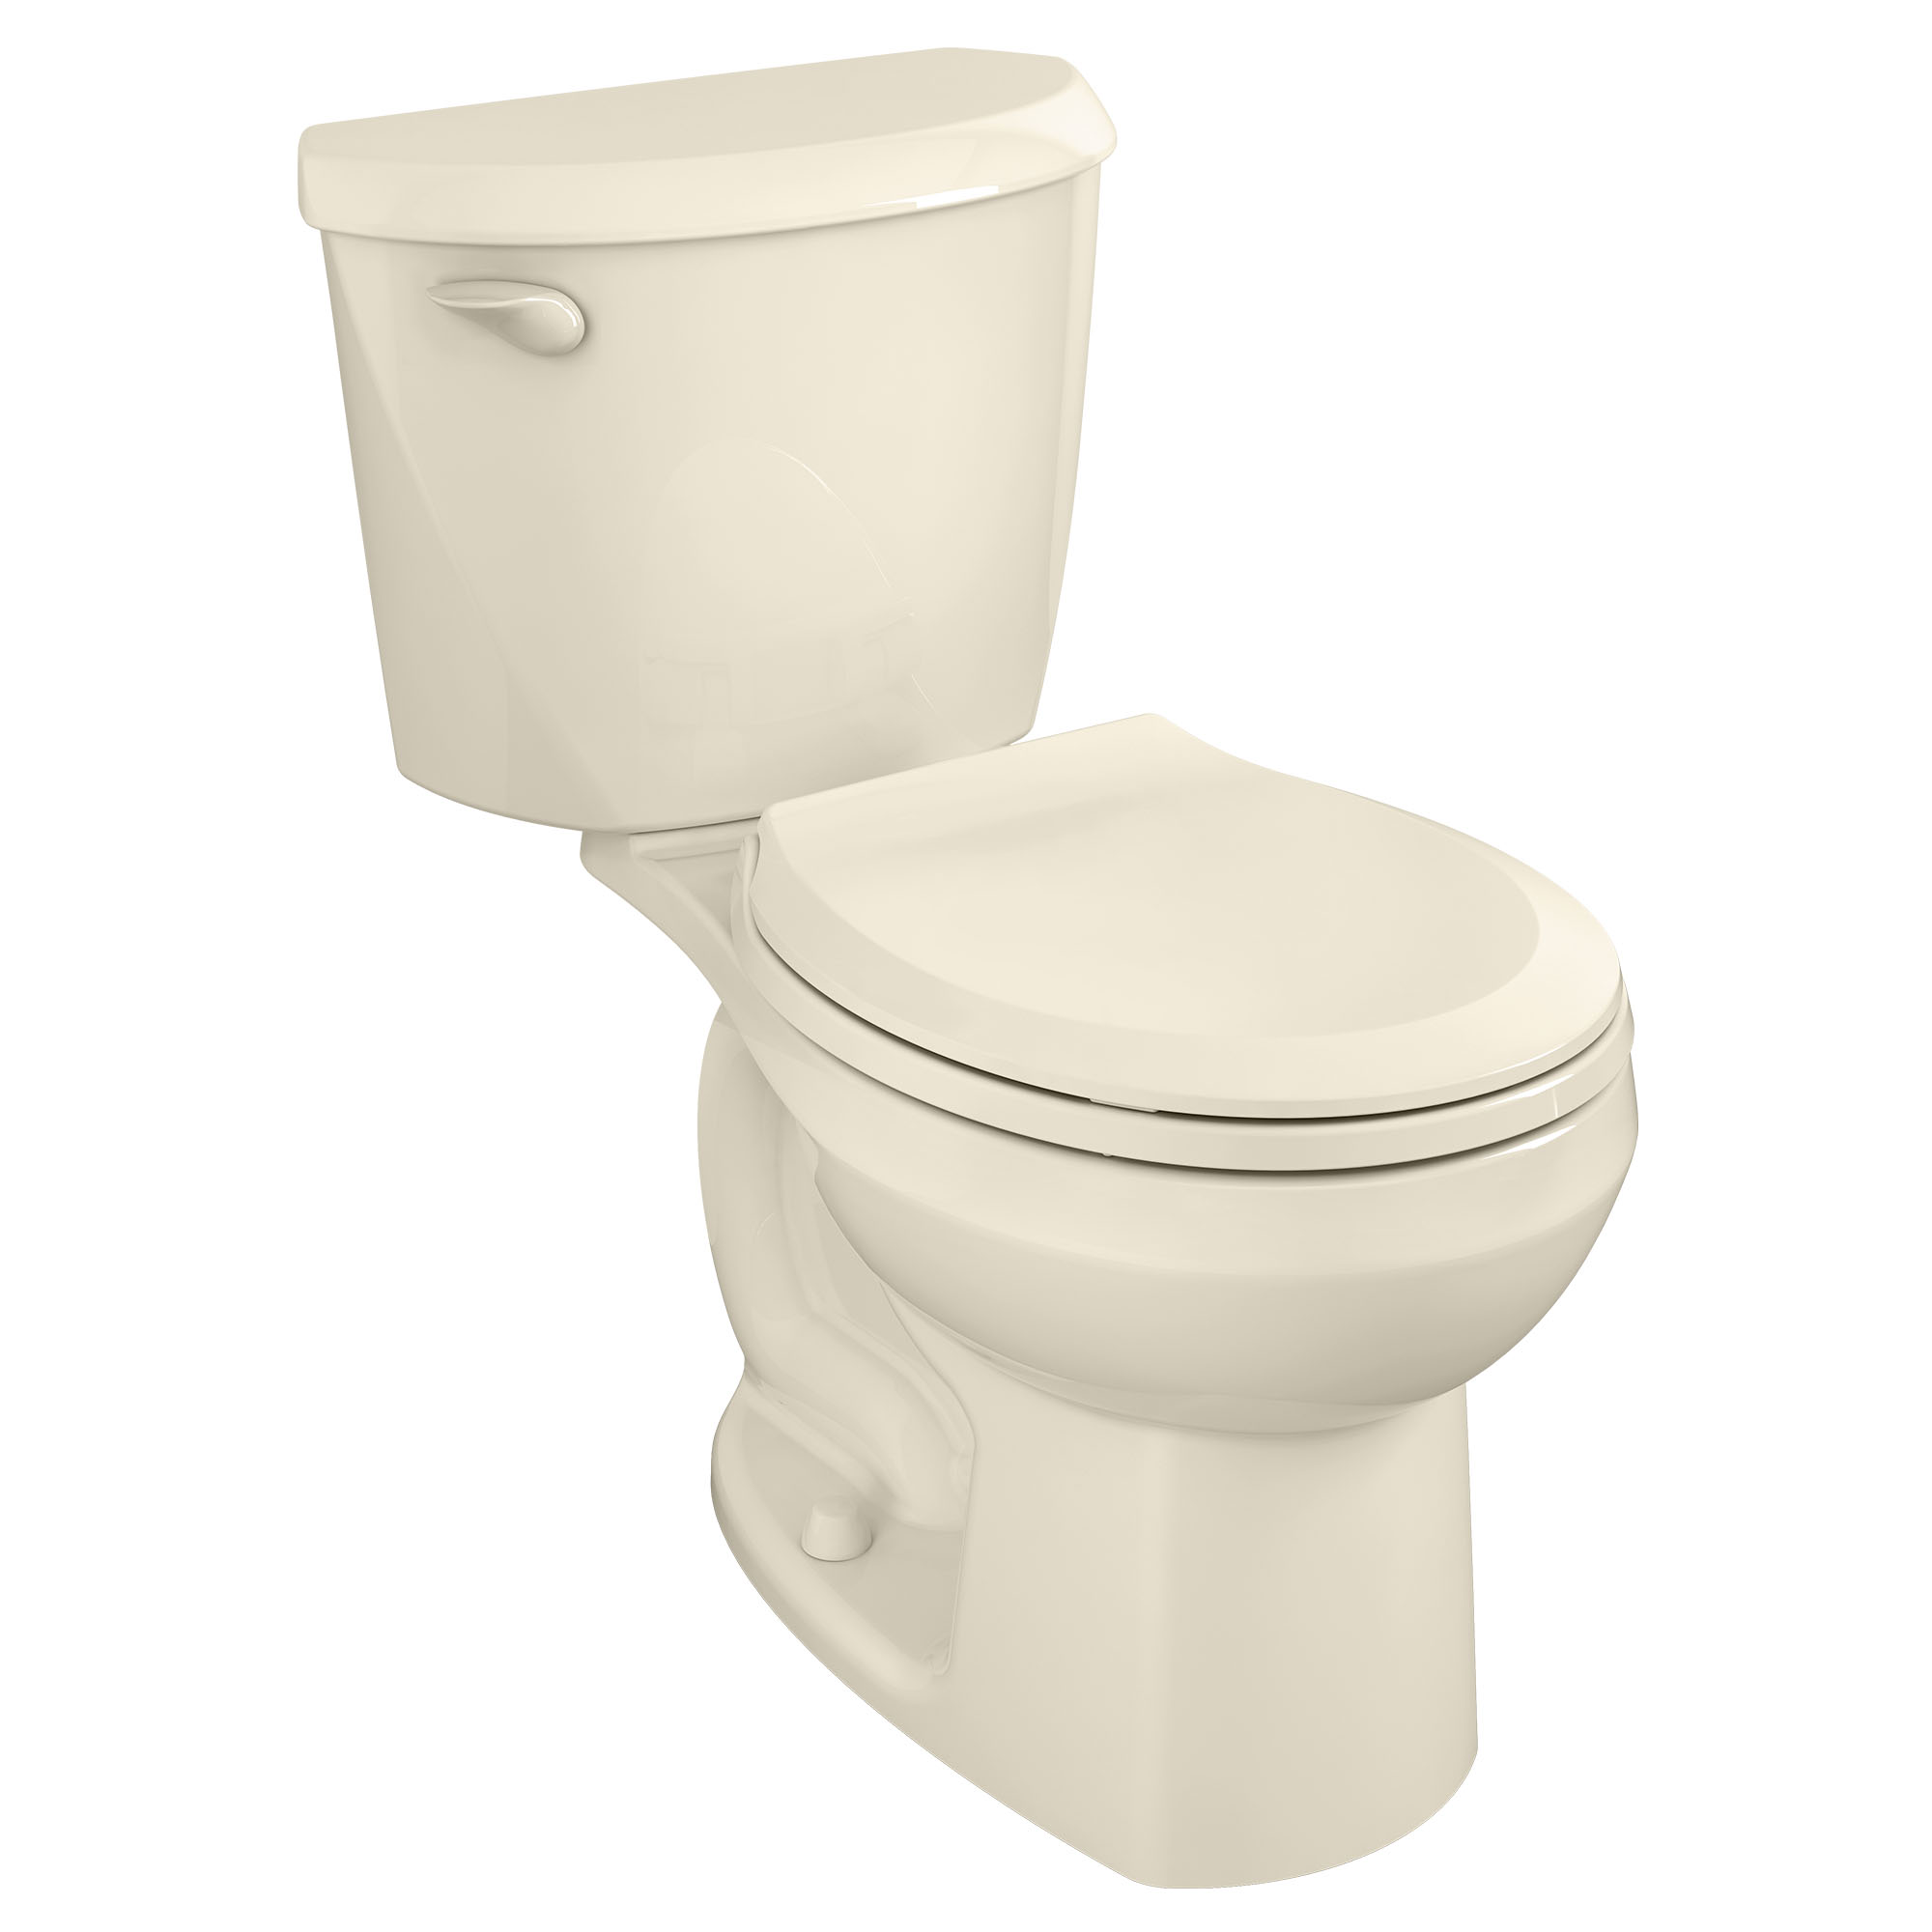 Toilette Colony, 2 pièces, 1,28 gpc/4,8 lpc, à cuvette au devant rond et hauteur régulière, sans siège